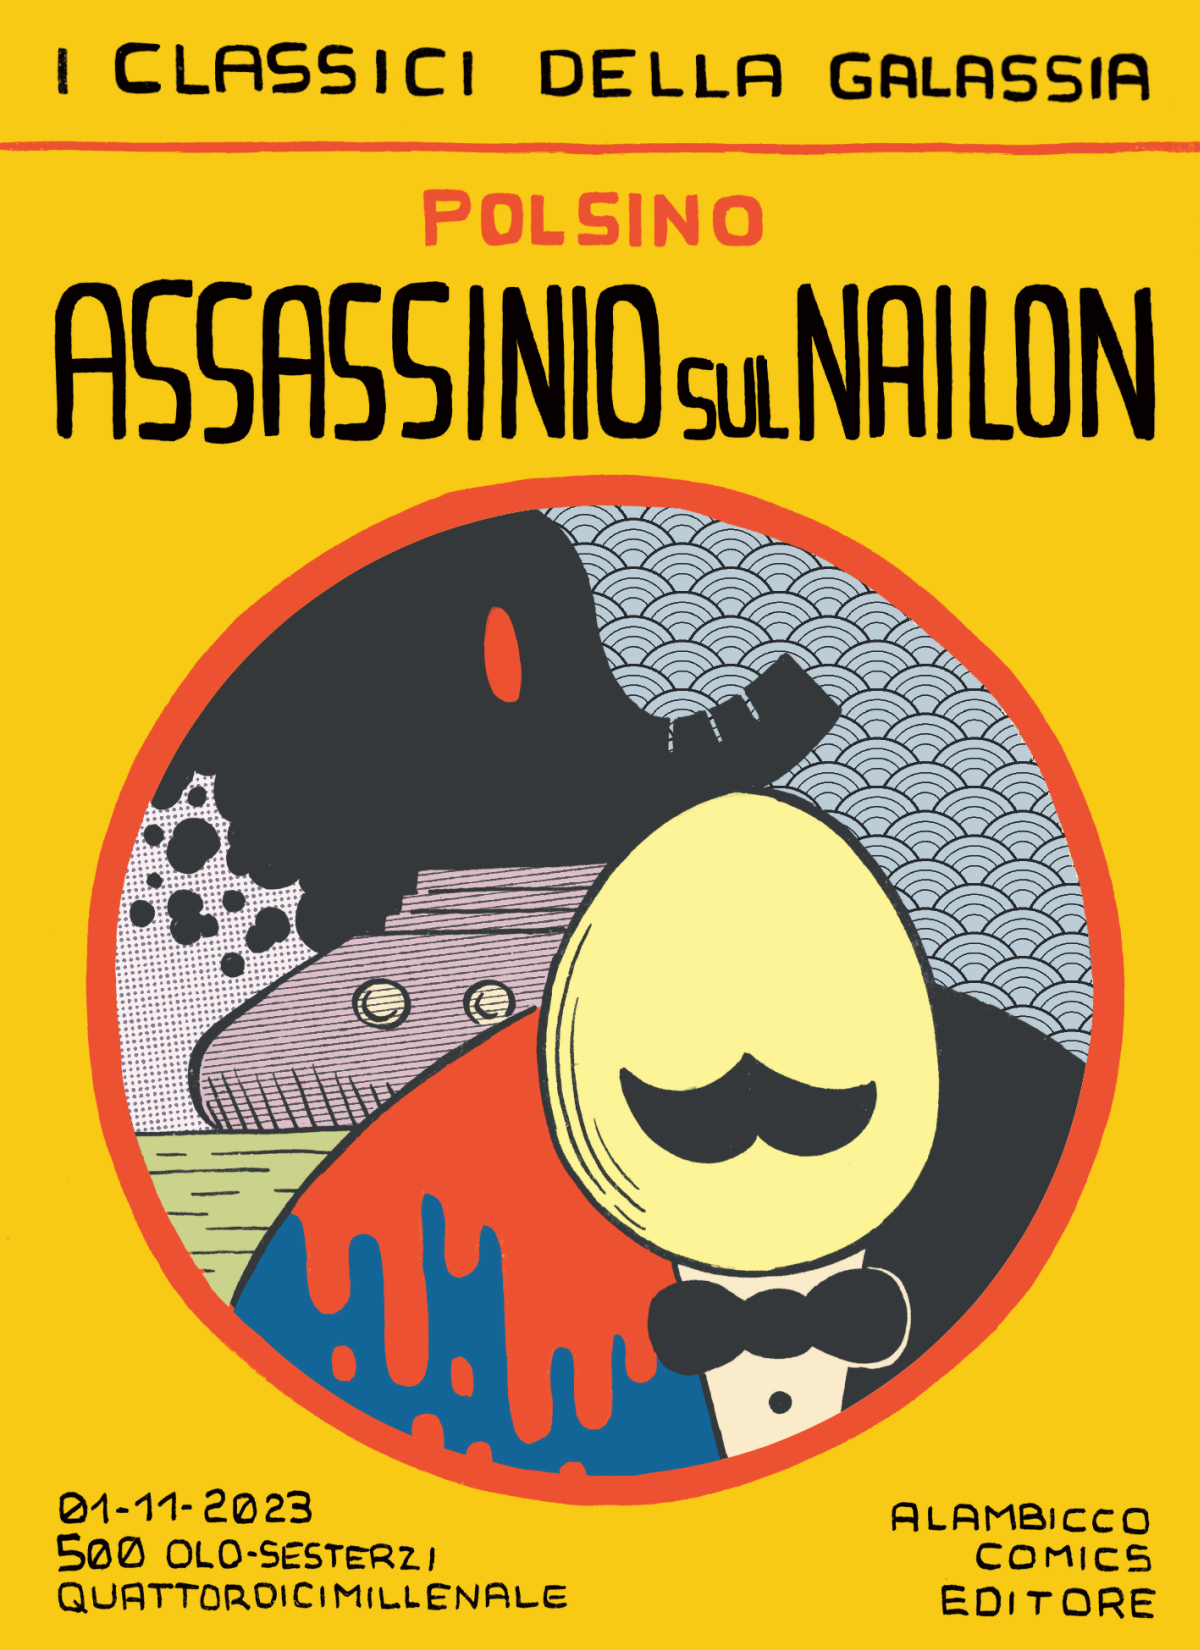 Assassinio sul Nailon (Italiano language, Alambicco Comics)